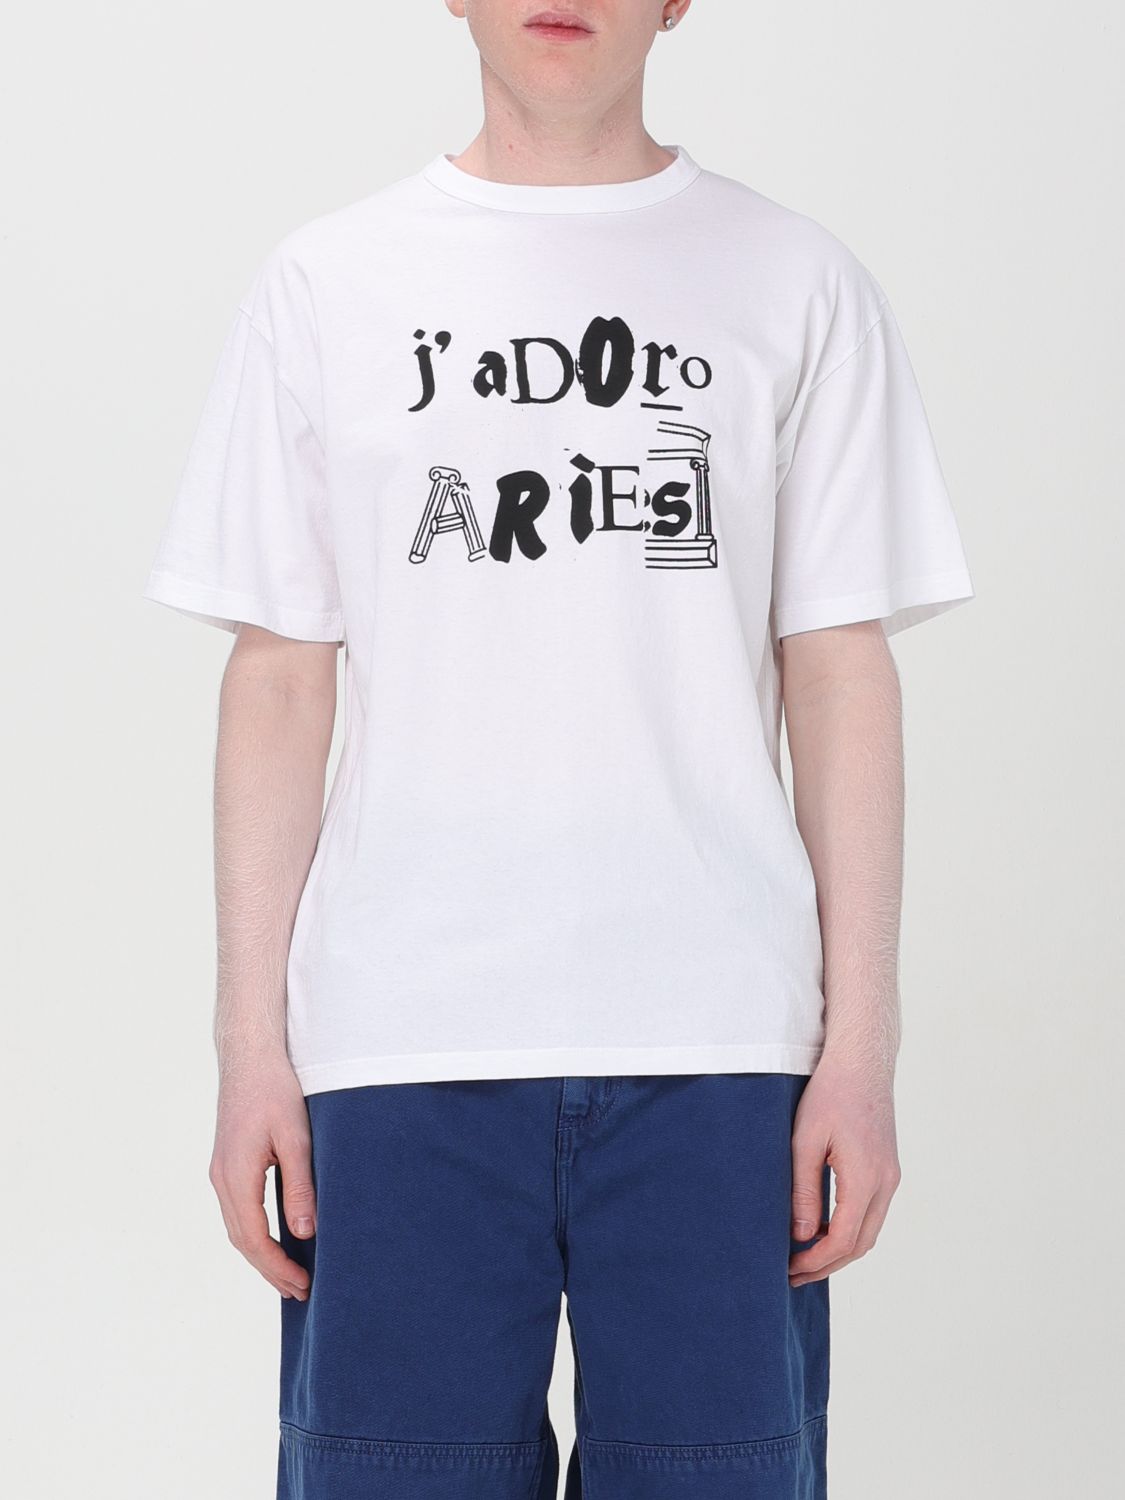 Aries T-Shirt ARIES Men colour White